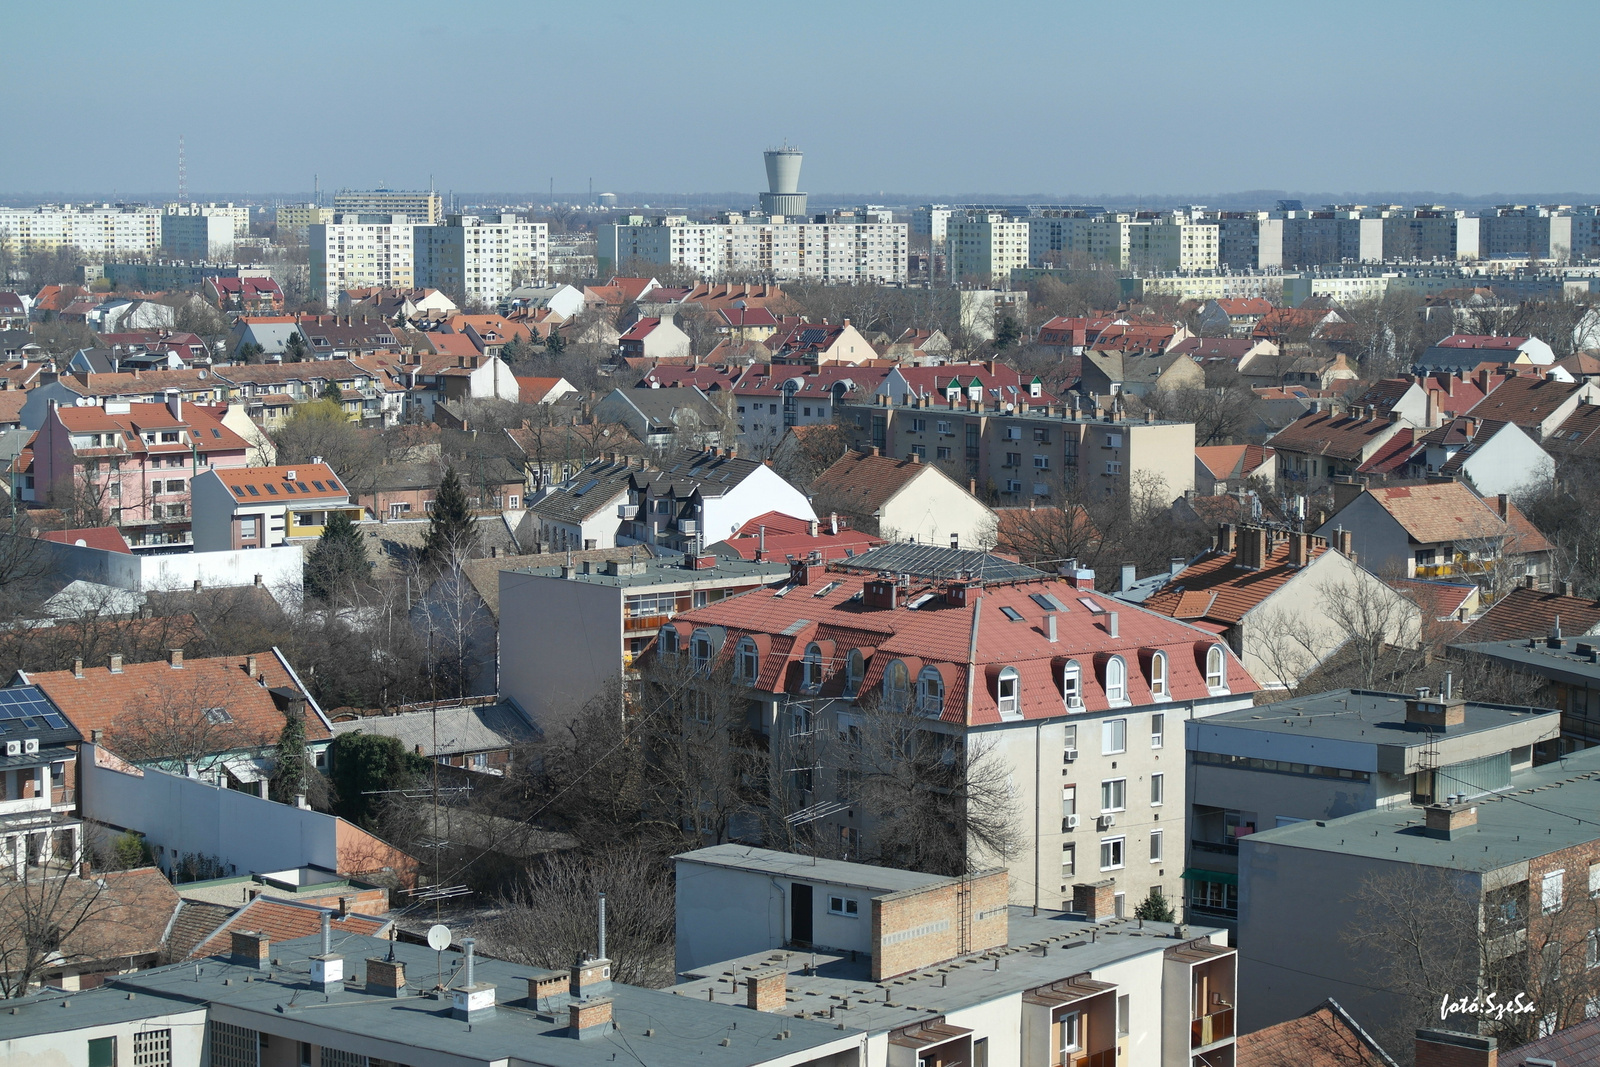 Városom (3) - Szeged háztetői